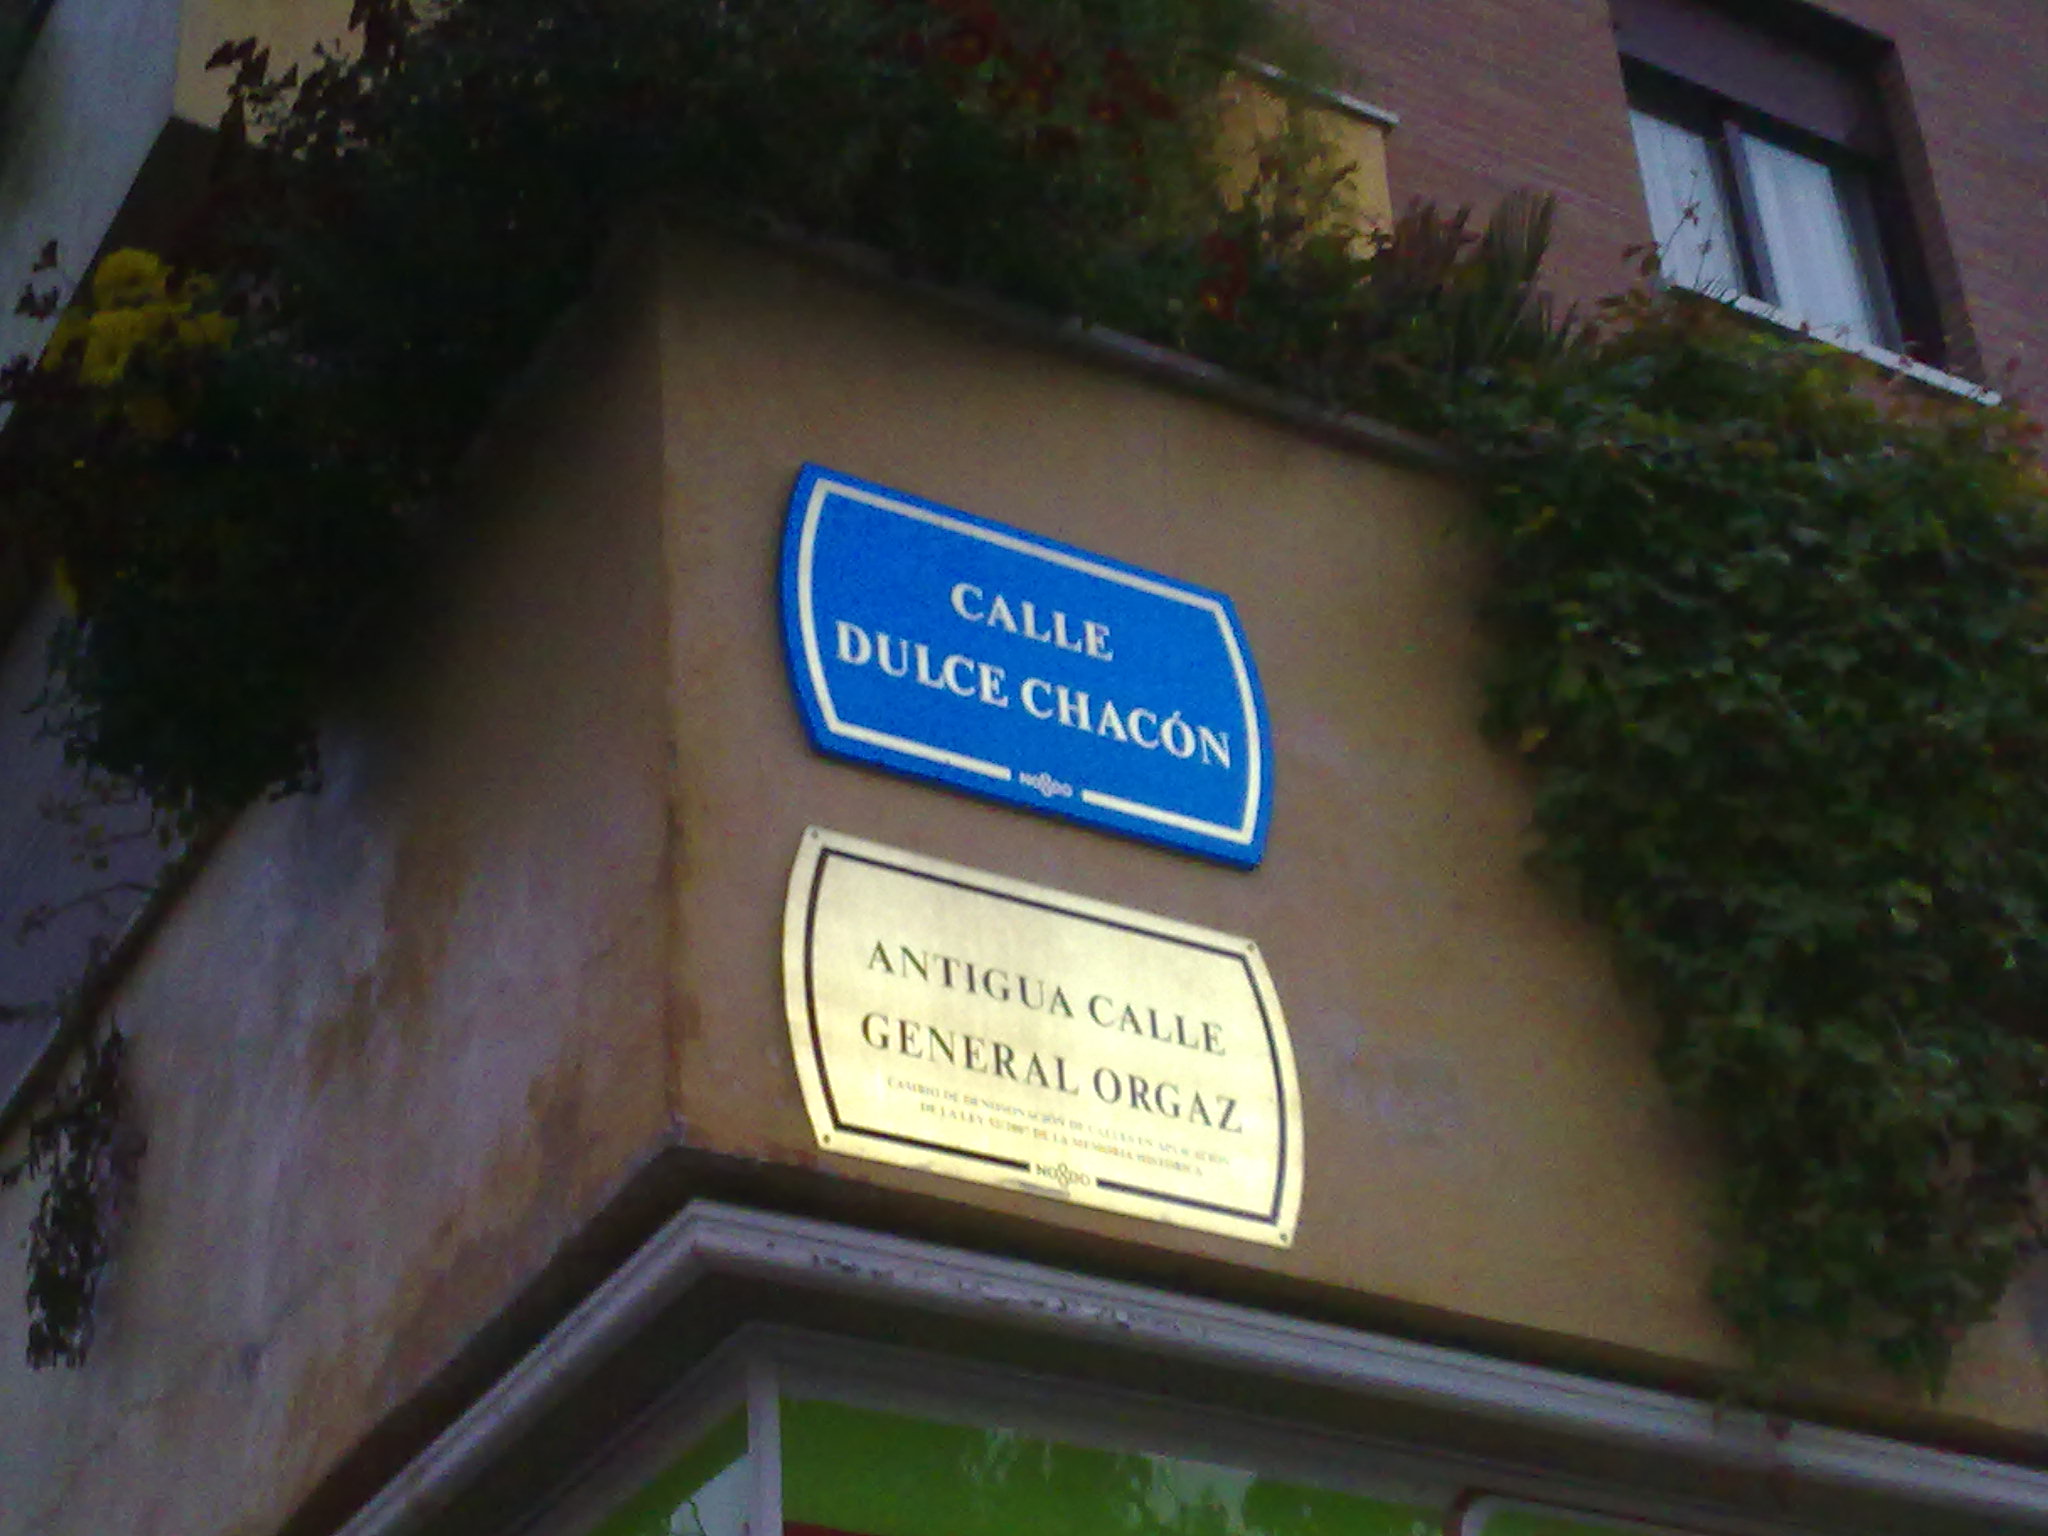 Targa nella calle dedicata a Dulce Chacon a Siviglia.